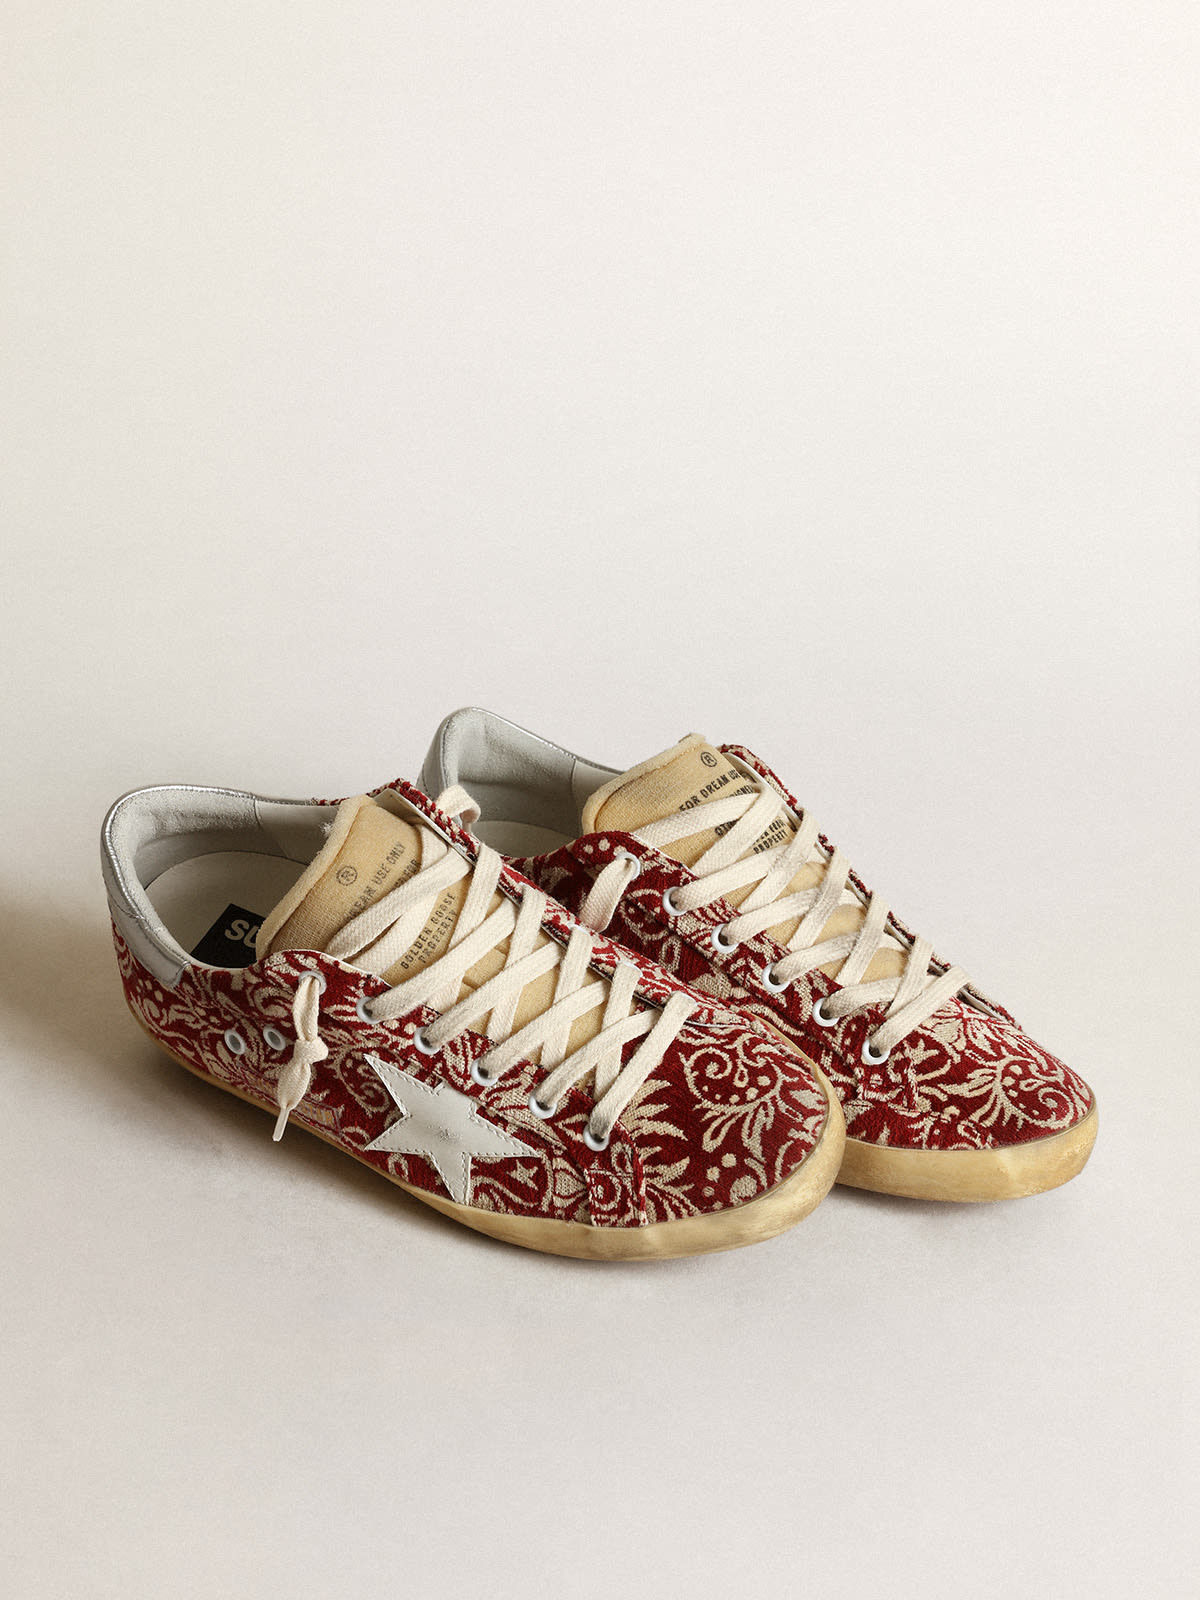 Golden Goose - Zapatillas deportivas Super-Star de tejido jacquard rojo oscuro y marfil con estrella de piel blanca in 